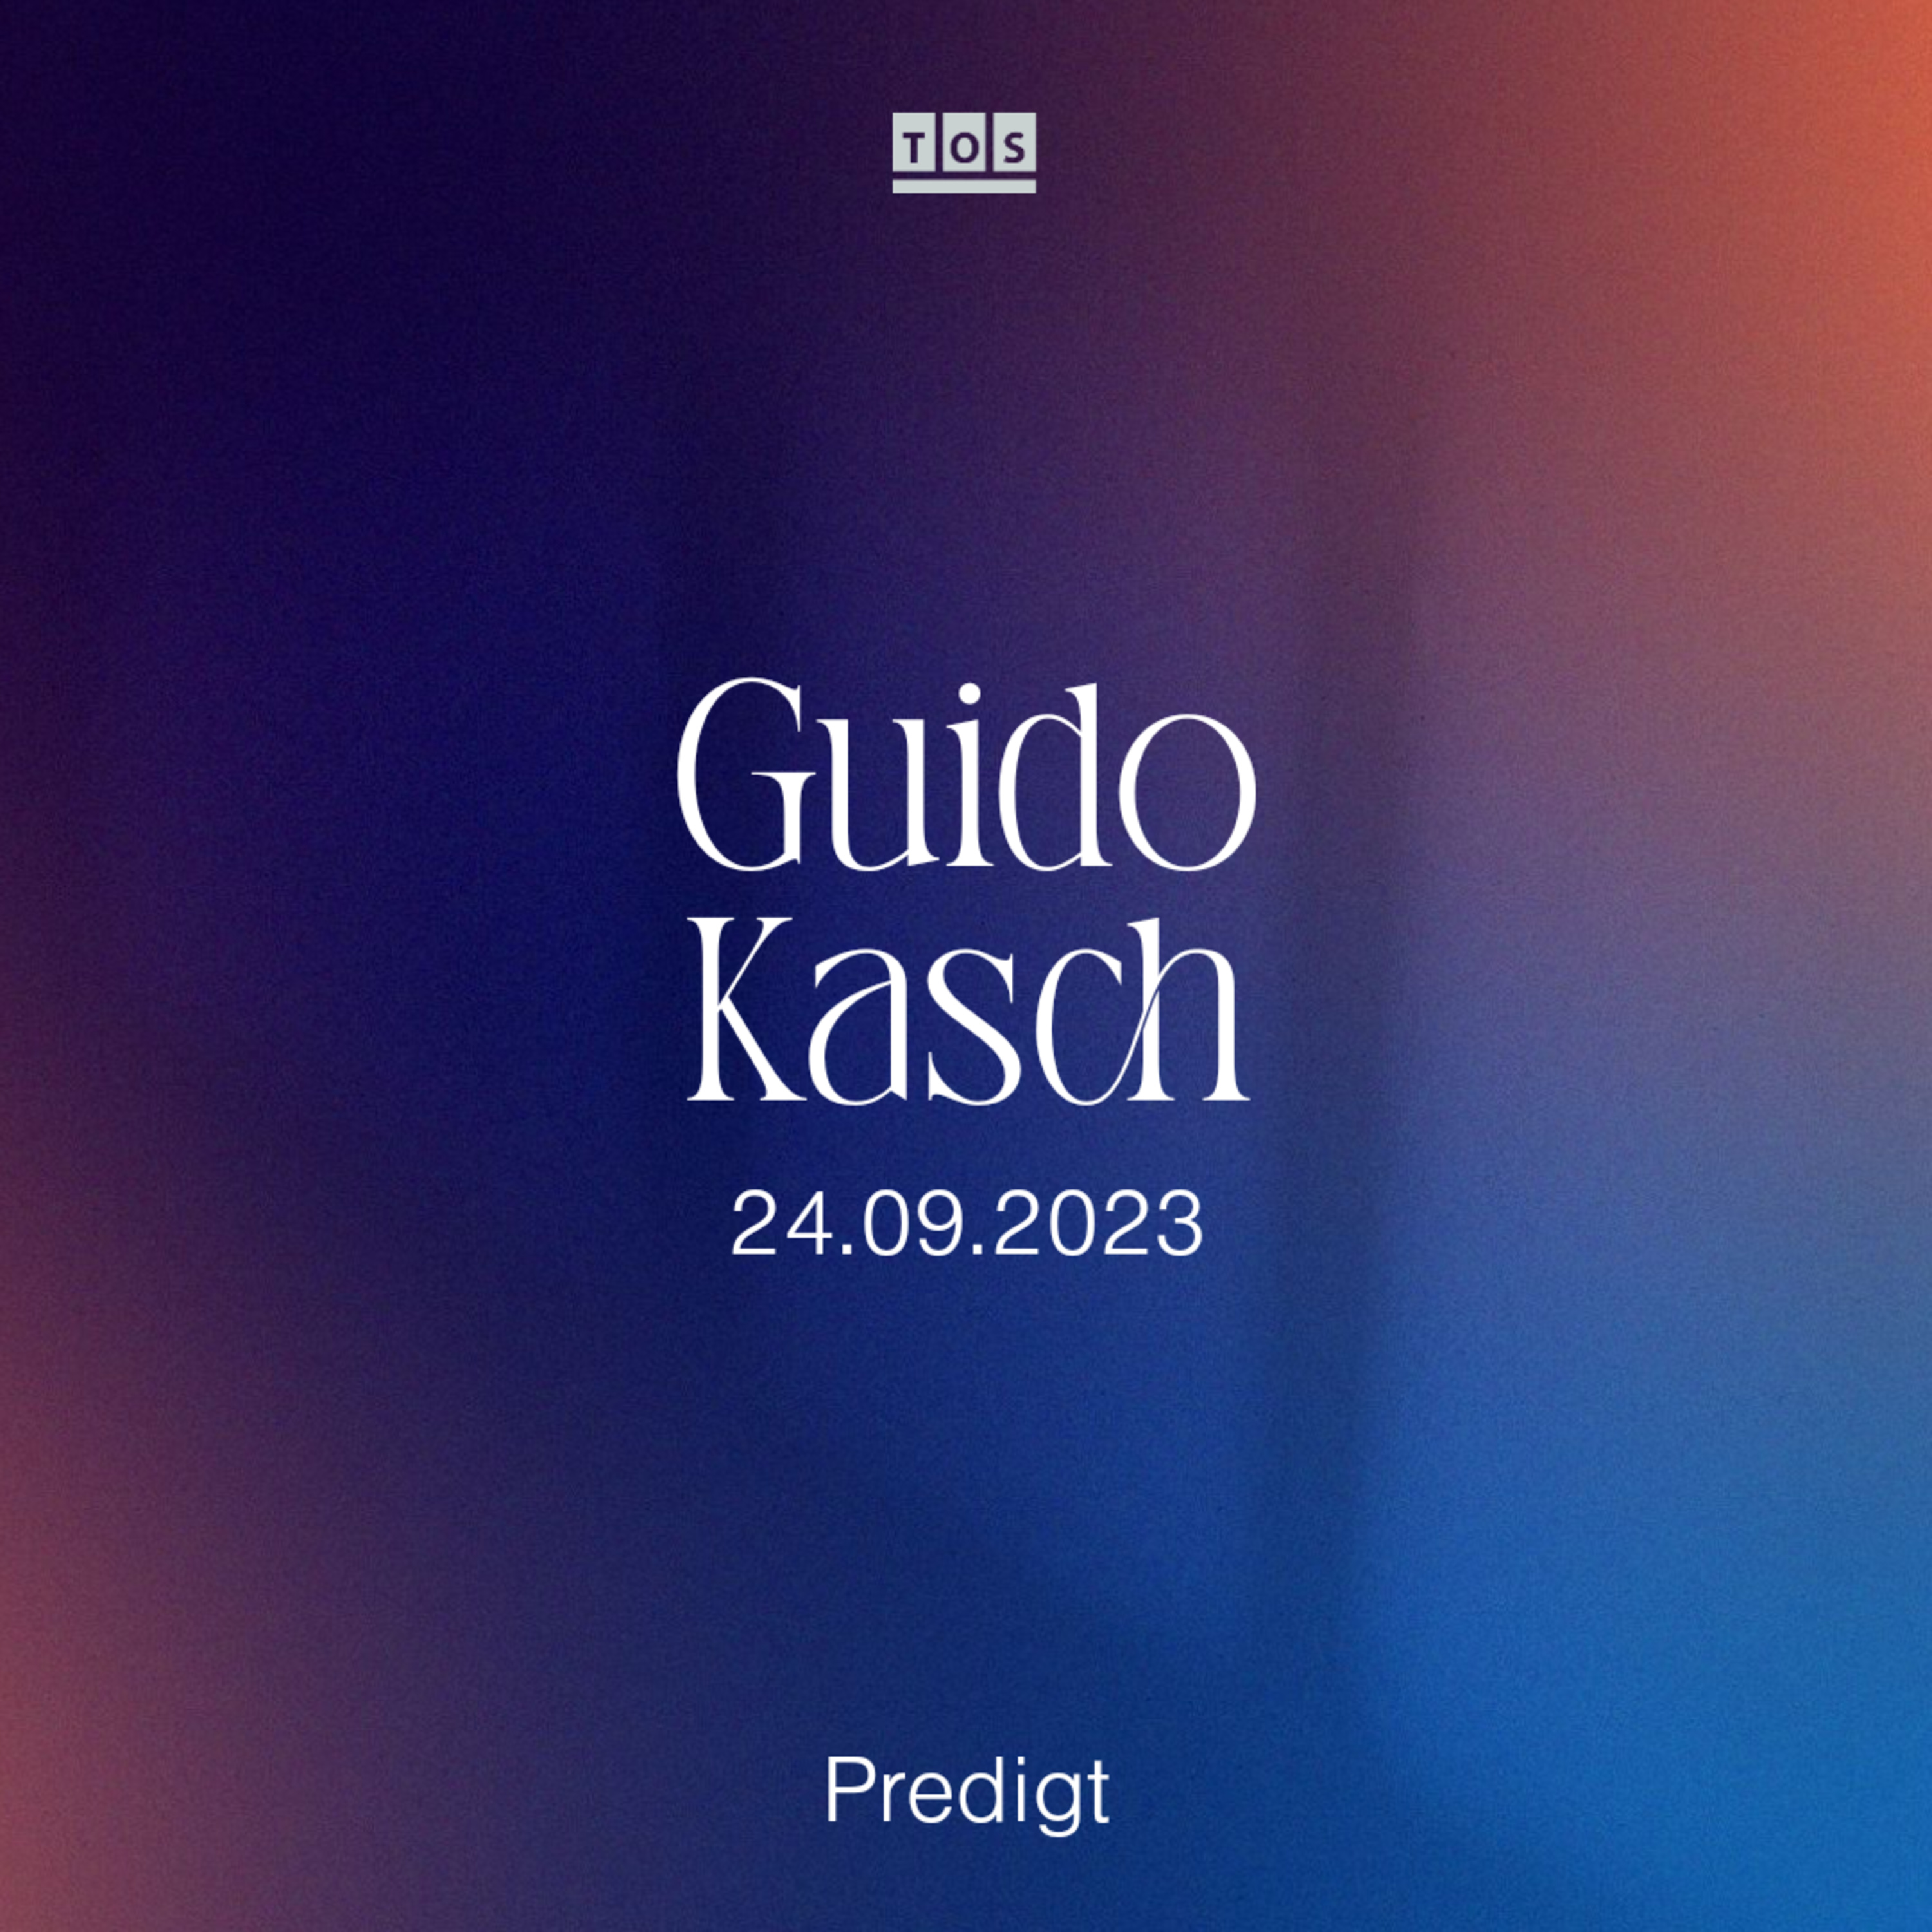 Guido Kasch - 24.09.2023 hero artwork